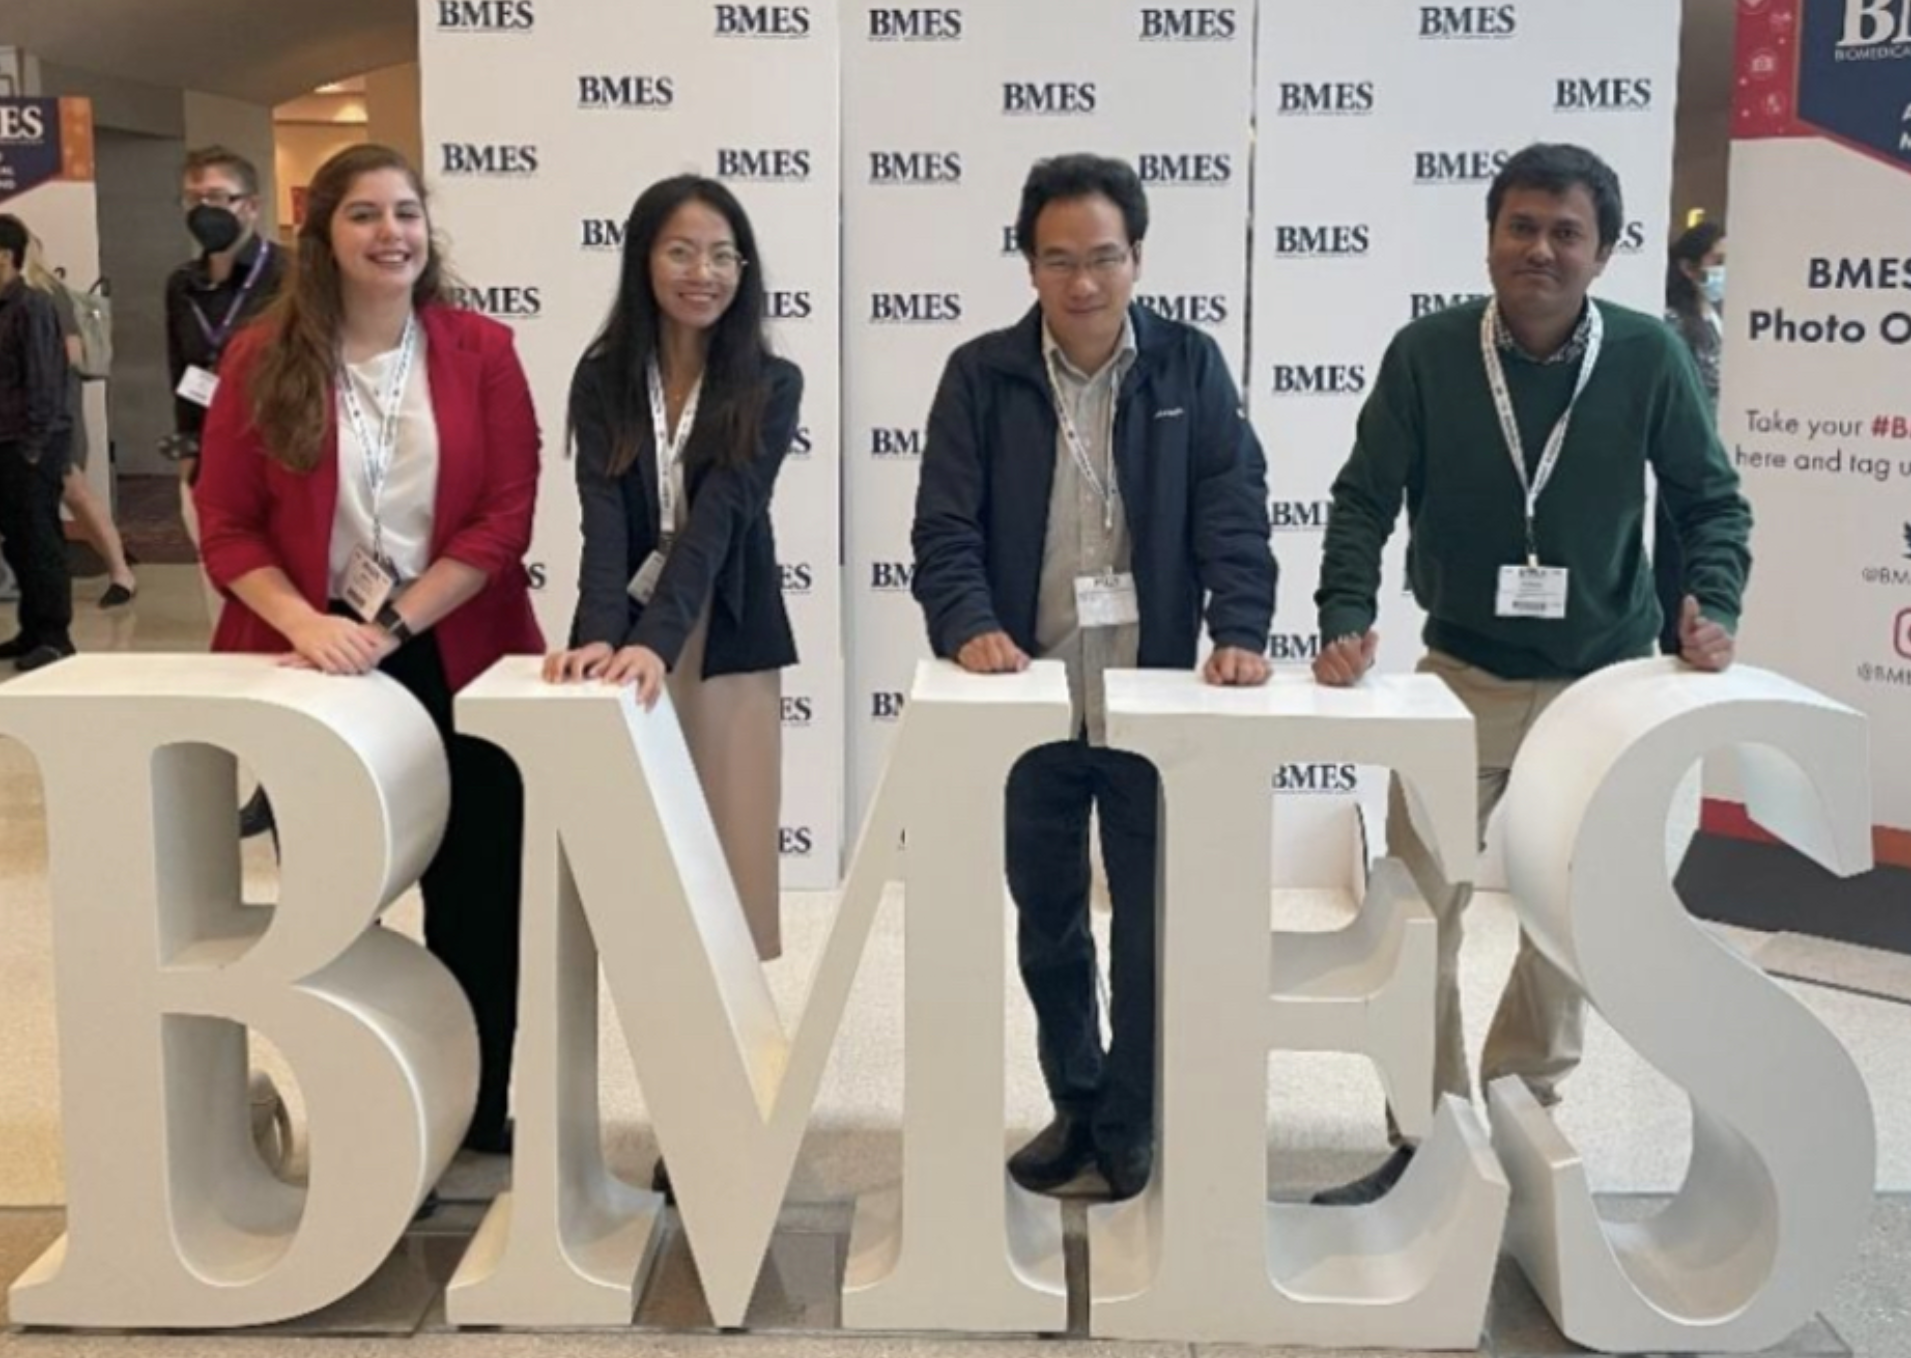 Madison Korfhage, Jing Yan, Md Zahid Hasan, Mehrana Mohtasebi, Xuhui Liu, and Zhongchao Yi attending the BMES 2022 Conference in San Antonio,